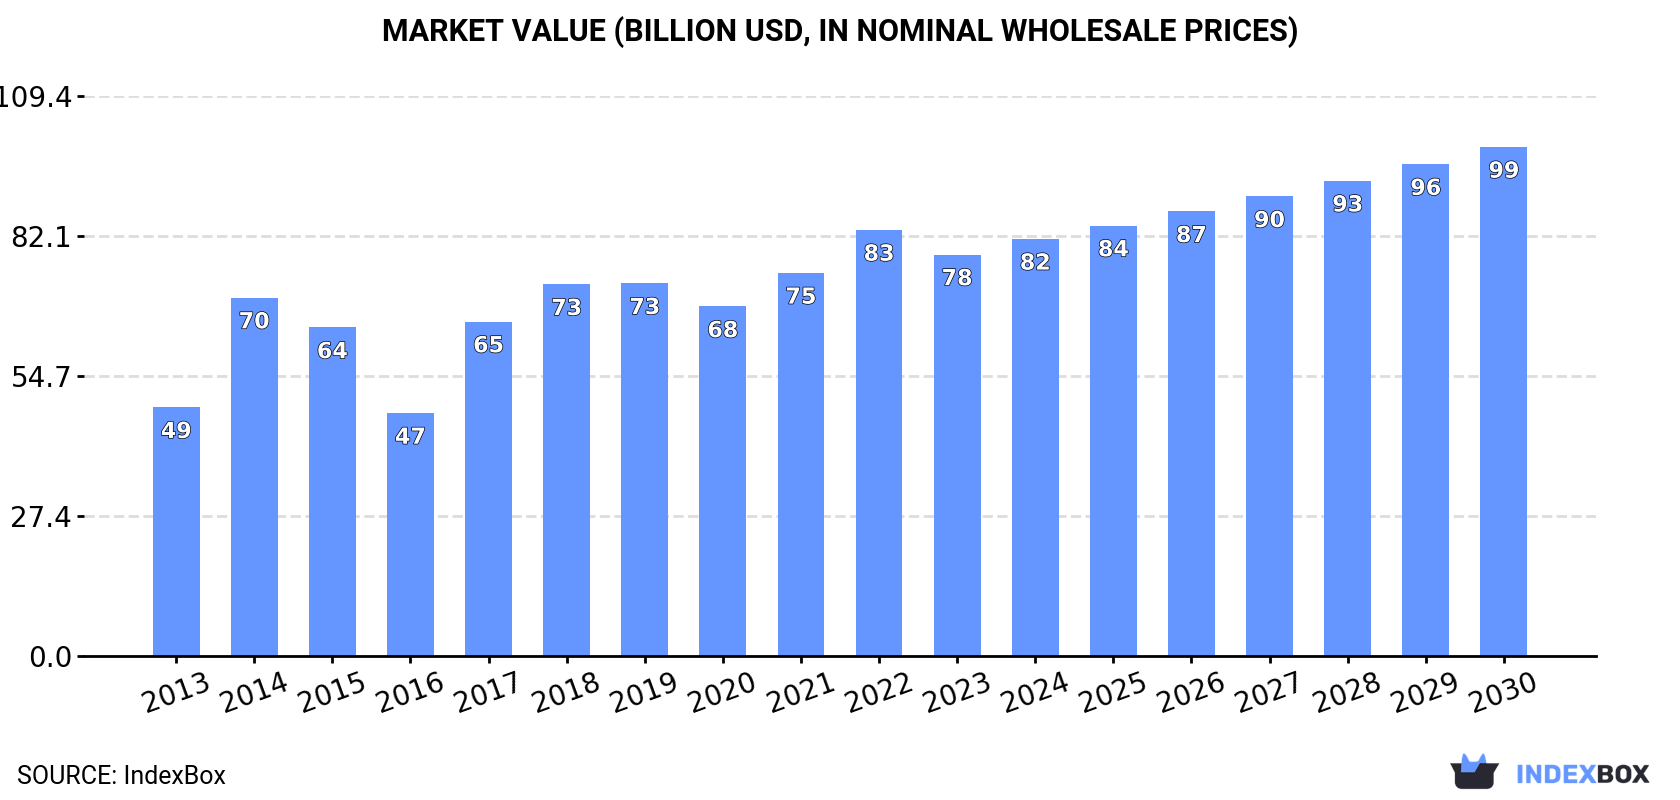 Market Value (billion USD, nominal wholesale prices)